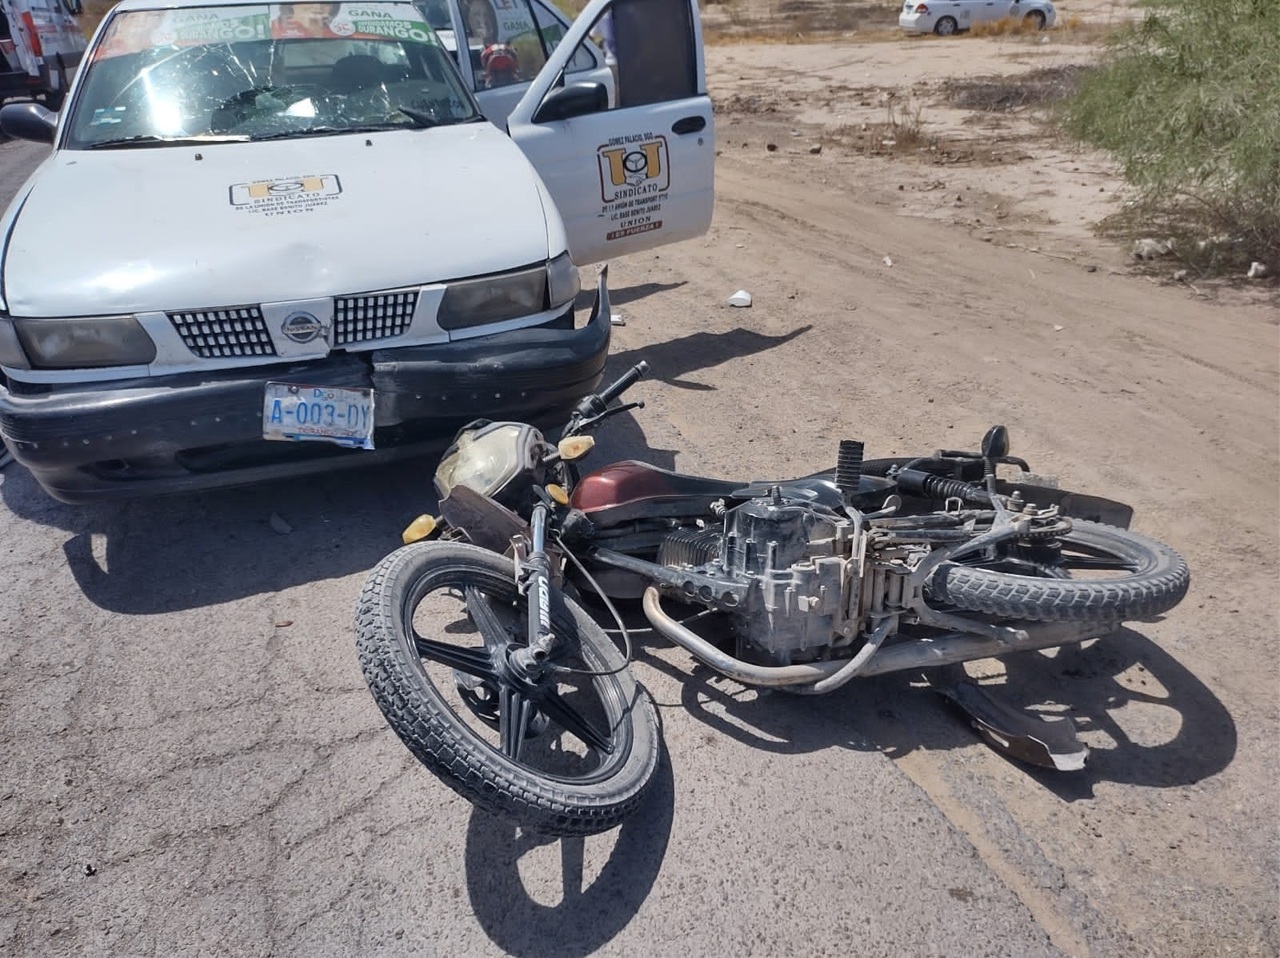 Los primeros reportes indicaron que el taxi invadió el carril contrario y se impactó contra una motocicleta.